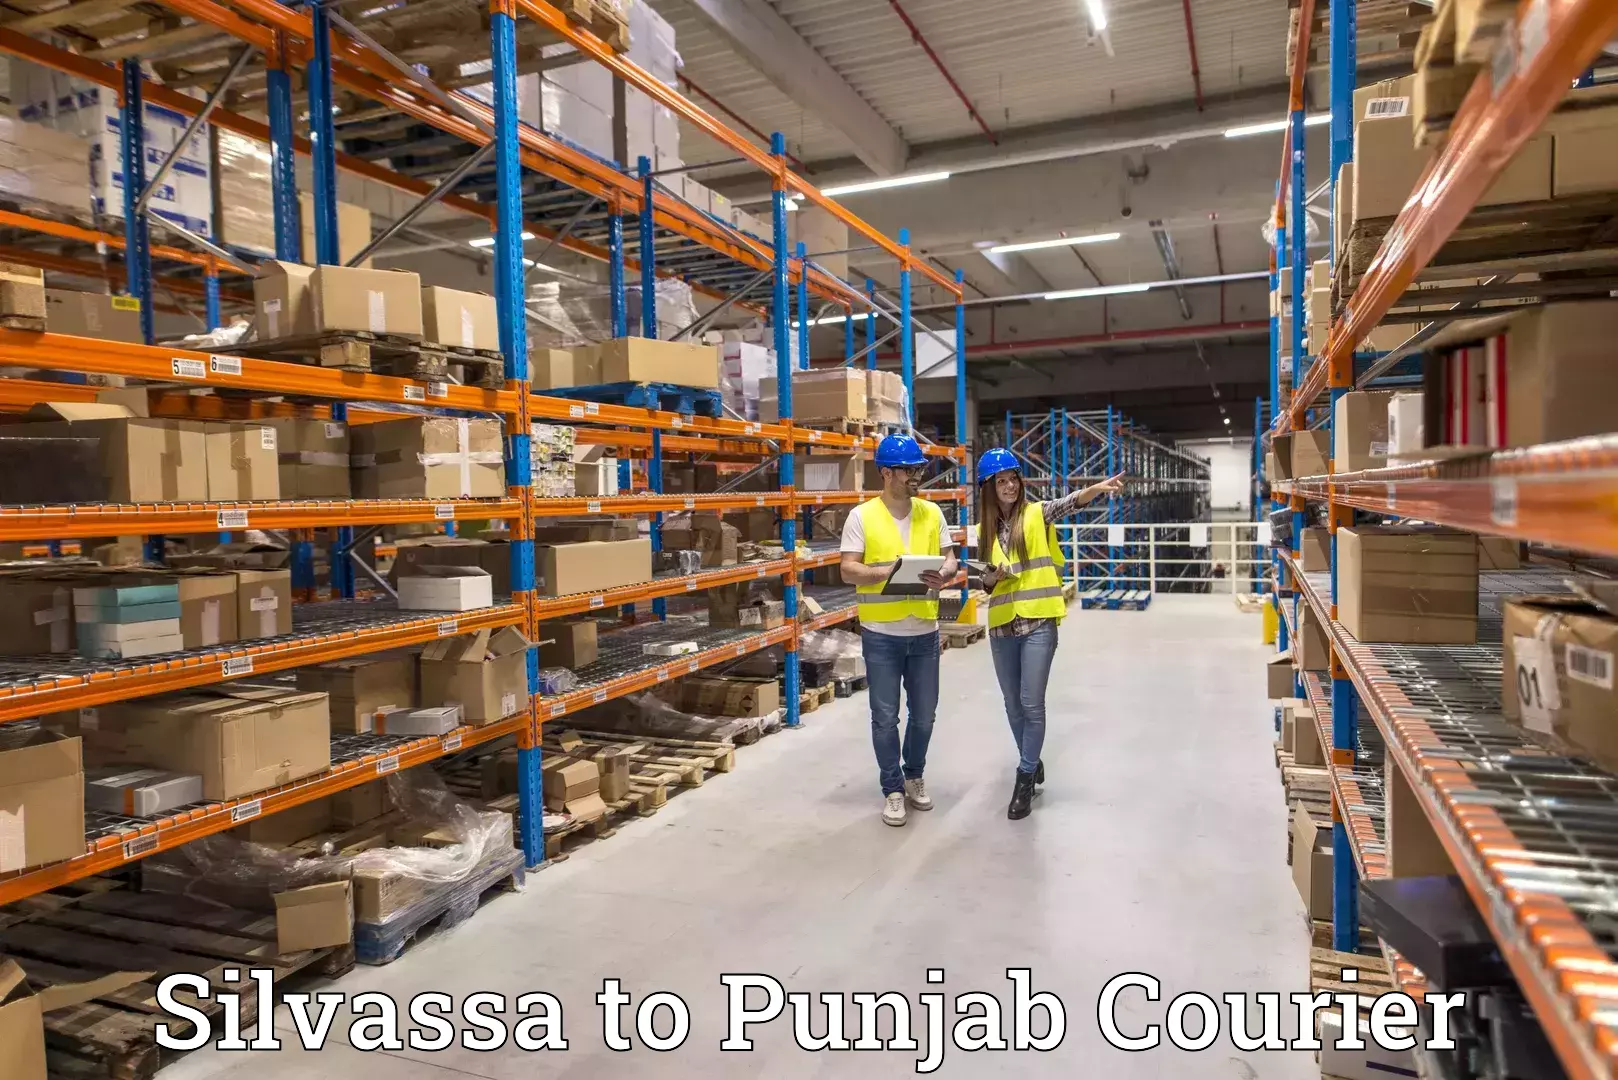 Customer-centric shipping Silvassa to Mohali